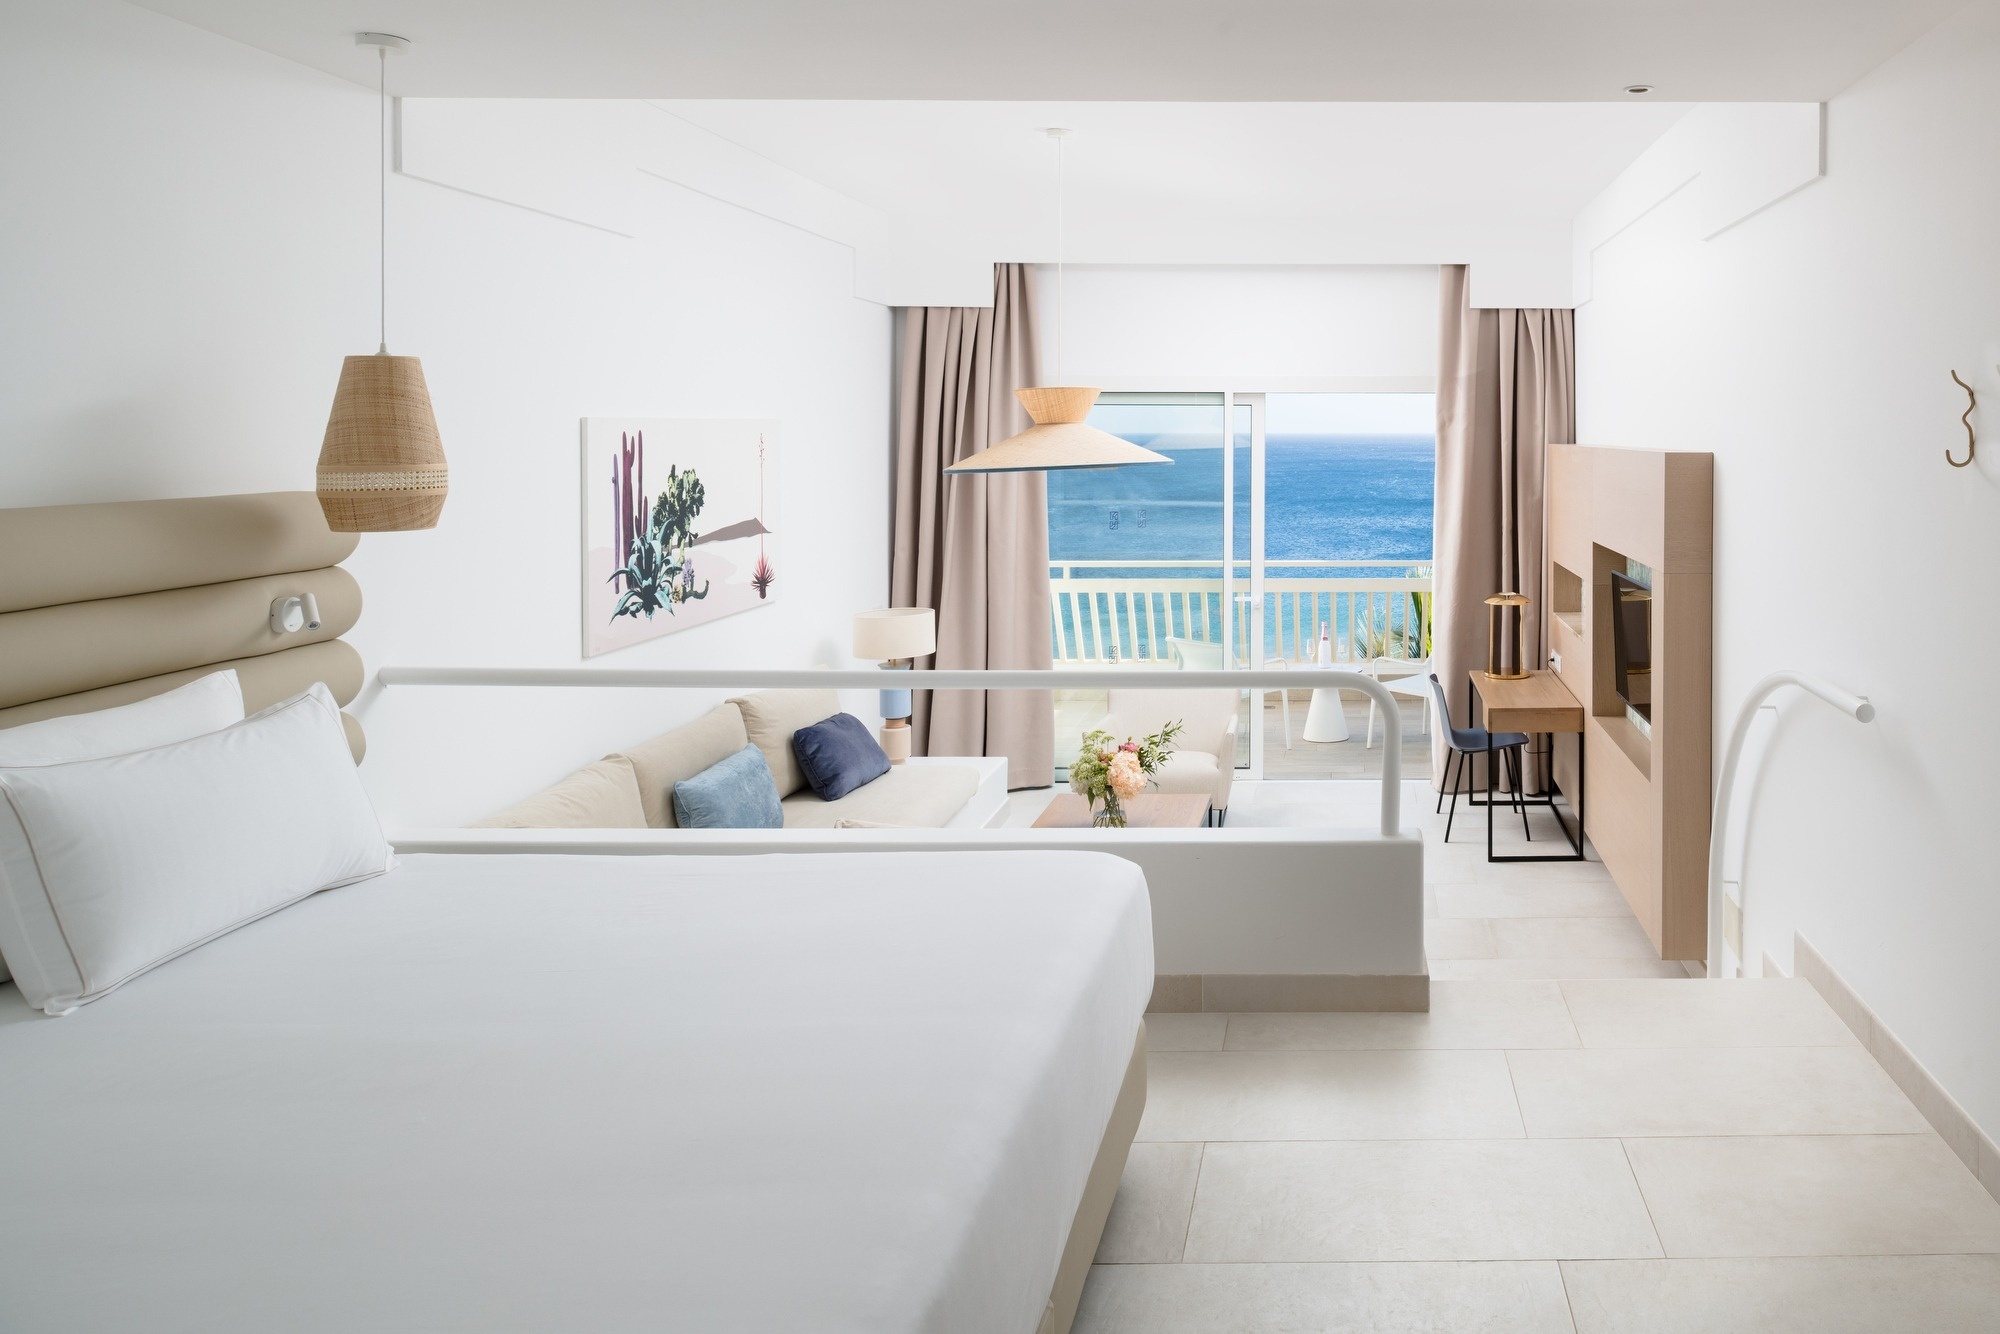 Plus Fariones Hotels & Apartments | Web Oficial | Puerto del Carmen - Lanzarote